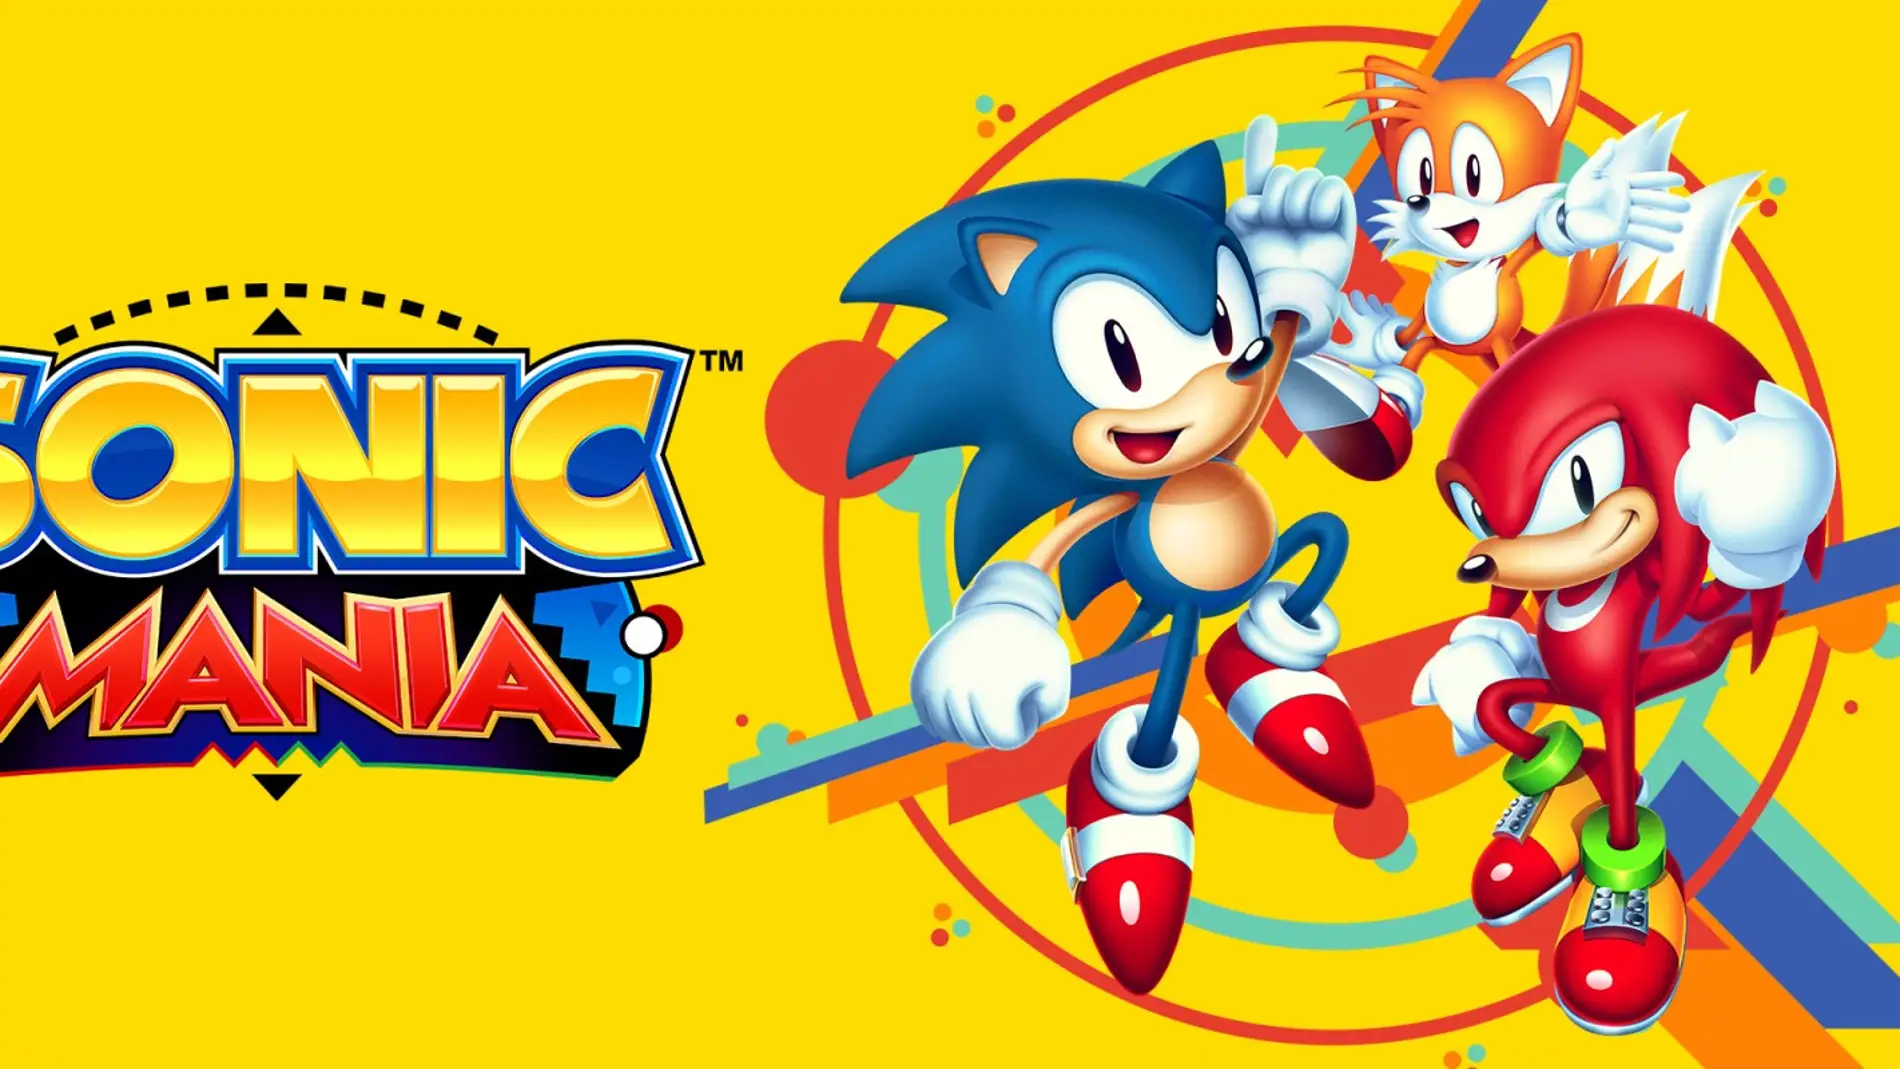 Vídeo Homenaje A Sonic The Hedgehog Conoces La Historia Del Personaje Vídeo